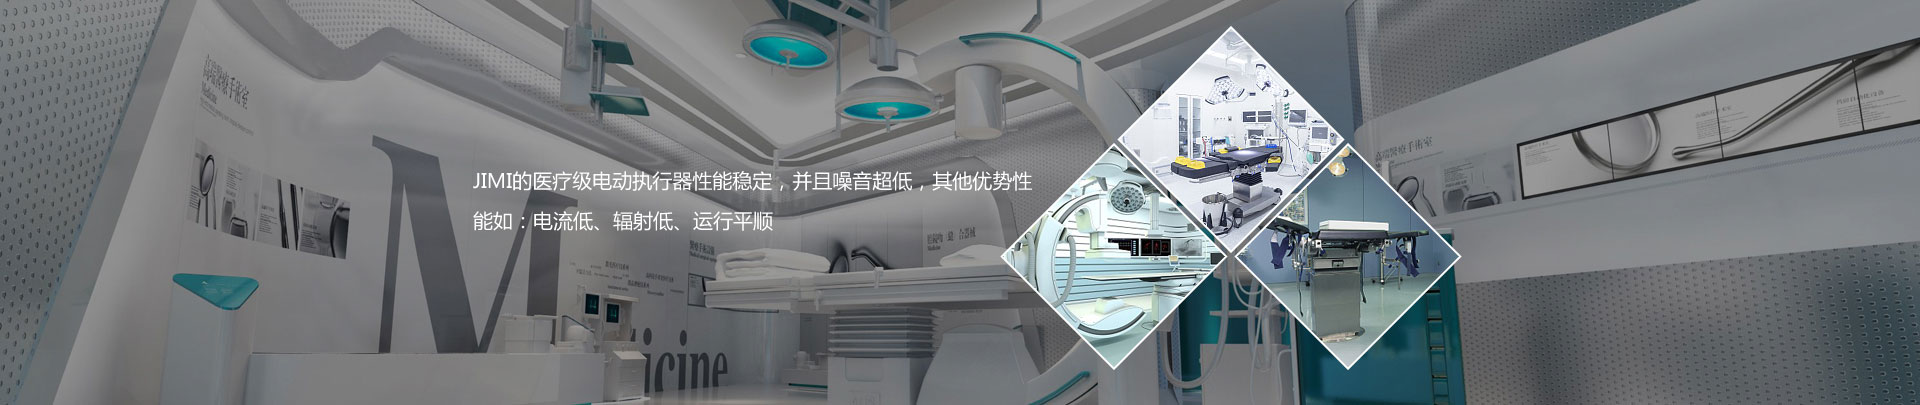 Shenzhen Jimei Huatai Technology Co., Ltd